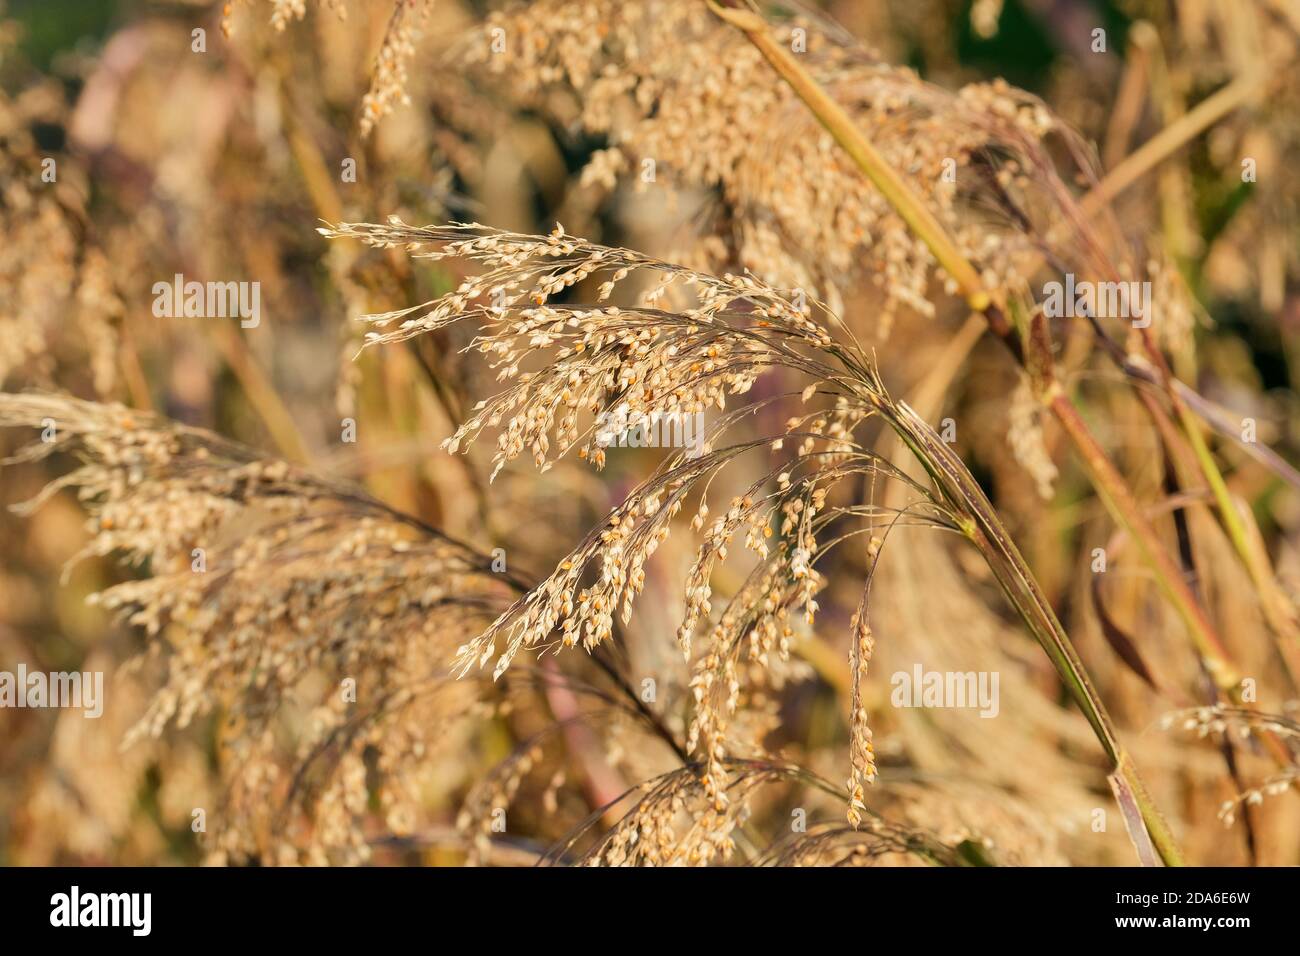 Panicum miliaceum, récolte de céréales, millet de maïs à balai, annuel, grain de céréales, graines prêtes pour la récolte Banque D'Images